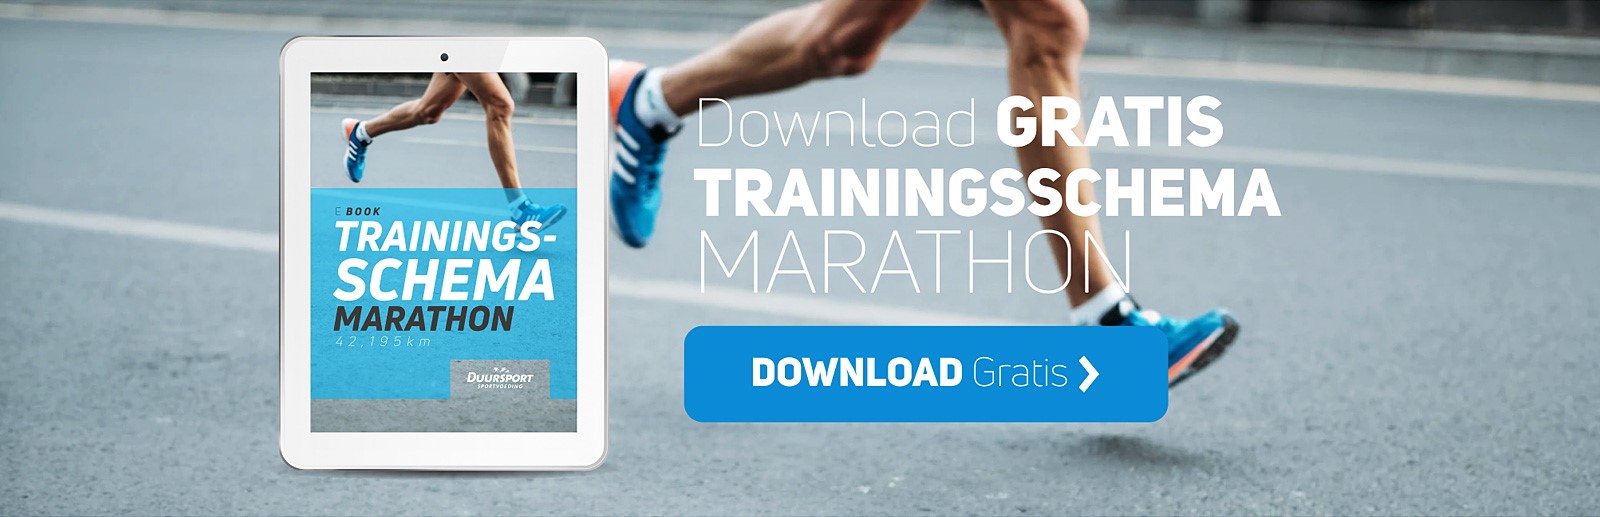 Trainingsschema Marathon